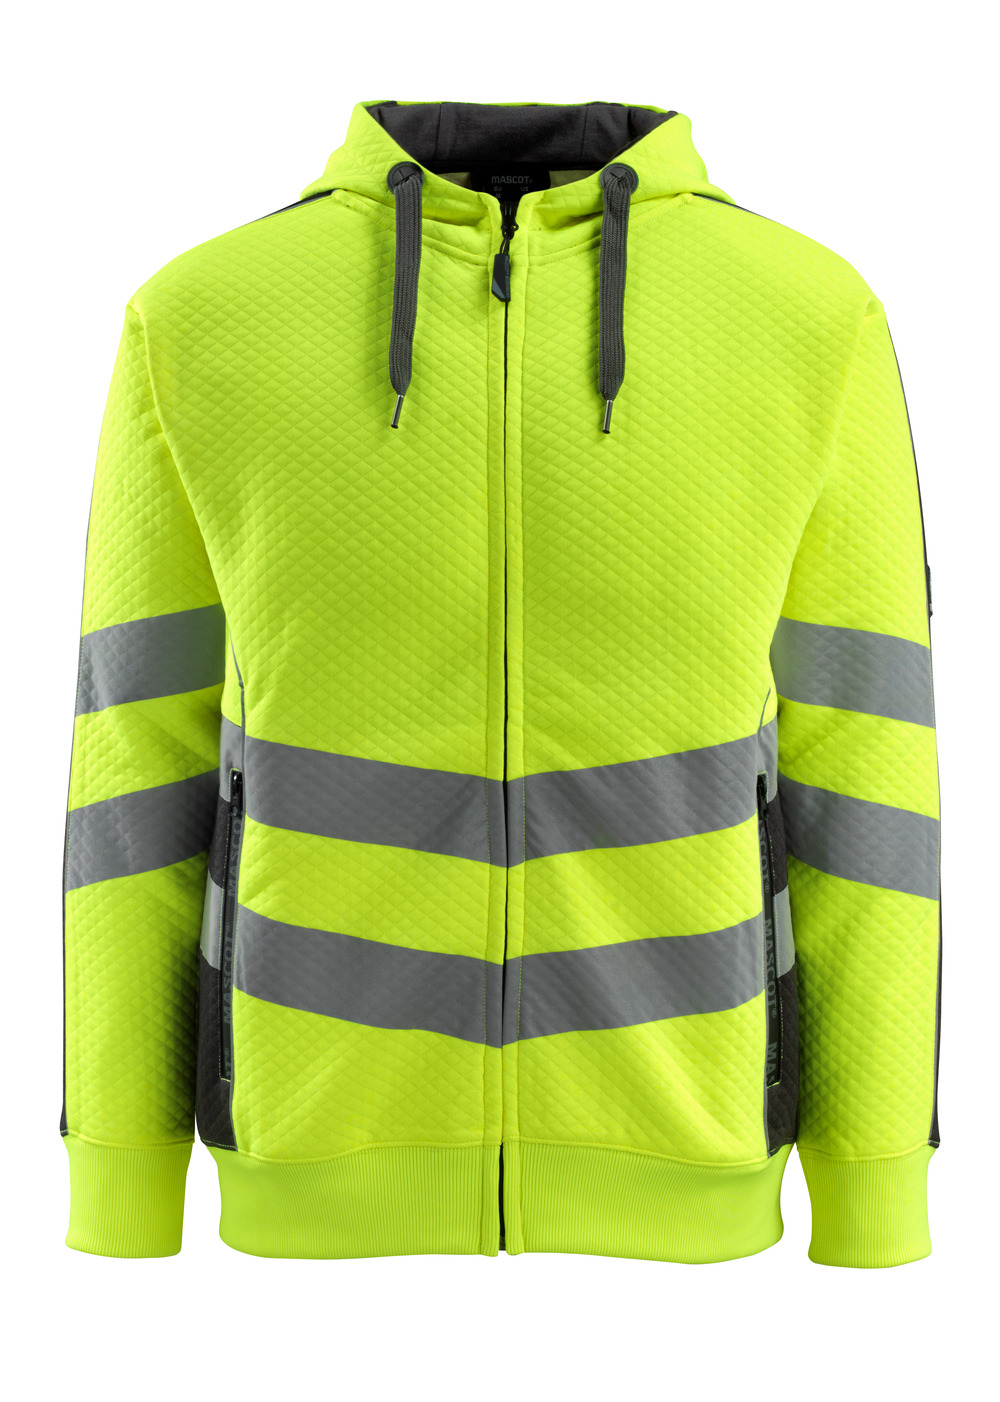 MASCOT-Warnschutz, Warn-Sweatshirt, Corby,  310 g/m², gelb/schwarz

